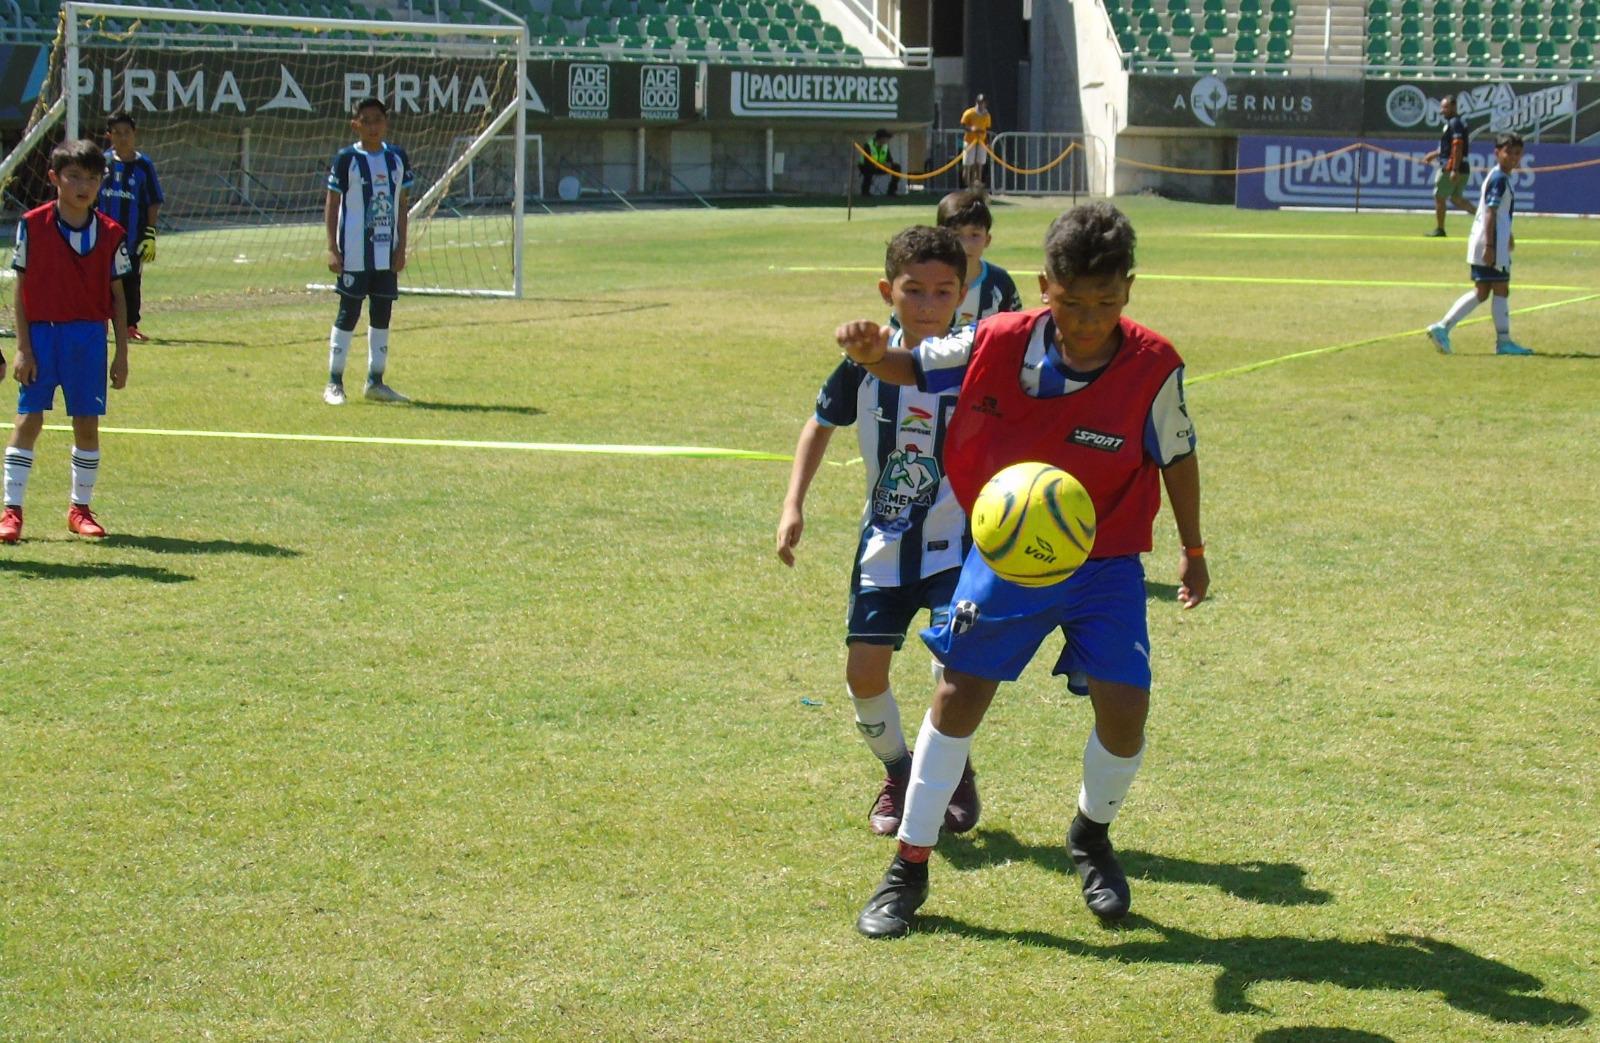 $!Pachuca destaca con 4 títulos en Copa Mazatlán de Futbol 7